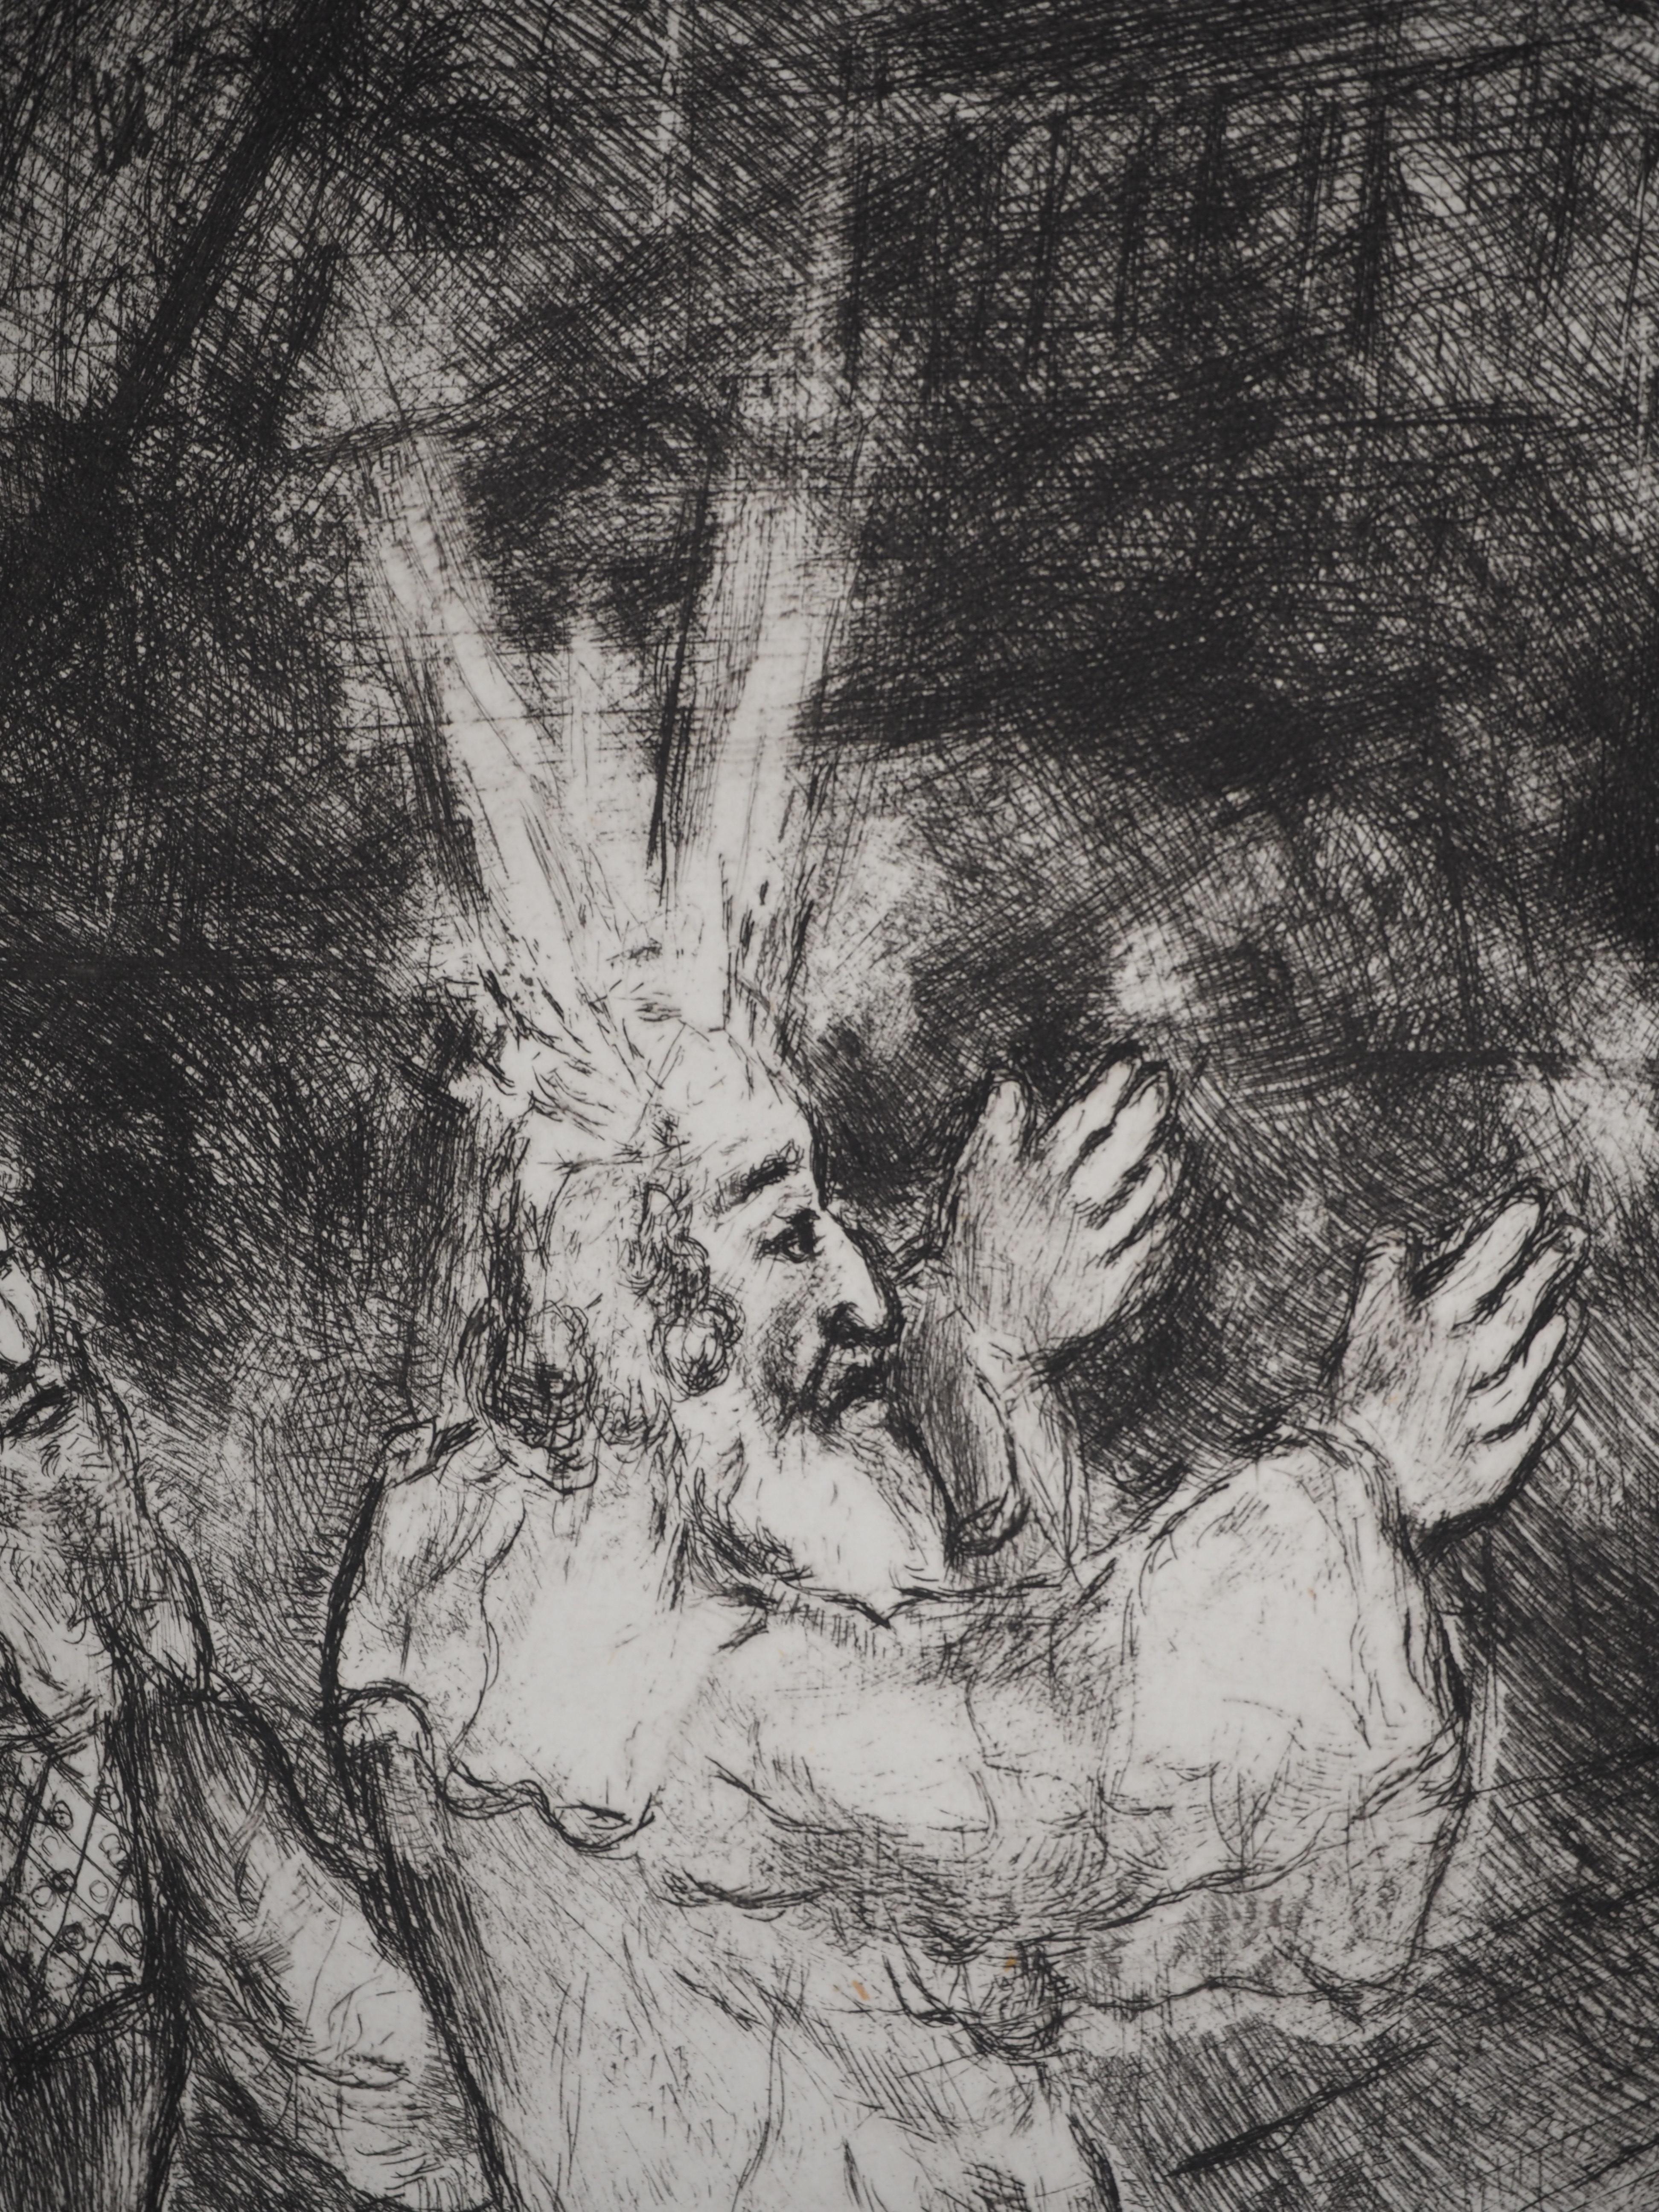 Marc Chagall (1887-1958)
Bible : Moïse et Aaron devant Pharaon, 1939

Gravure originale
Non signé
Sur vélin de Montval, 44 x 33.5 cm (c. 17.3 x 13.1 inch)

INFORMATION : Publié par Vollard / Tériade en 1956

RÉFÉRENCE : Catalogue raisonné Sorlier